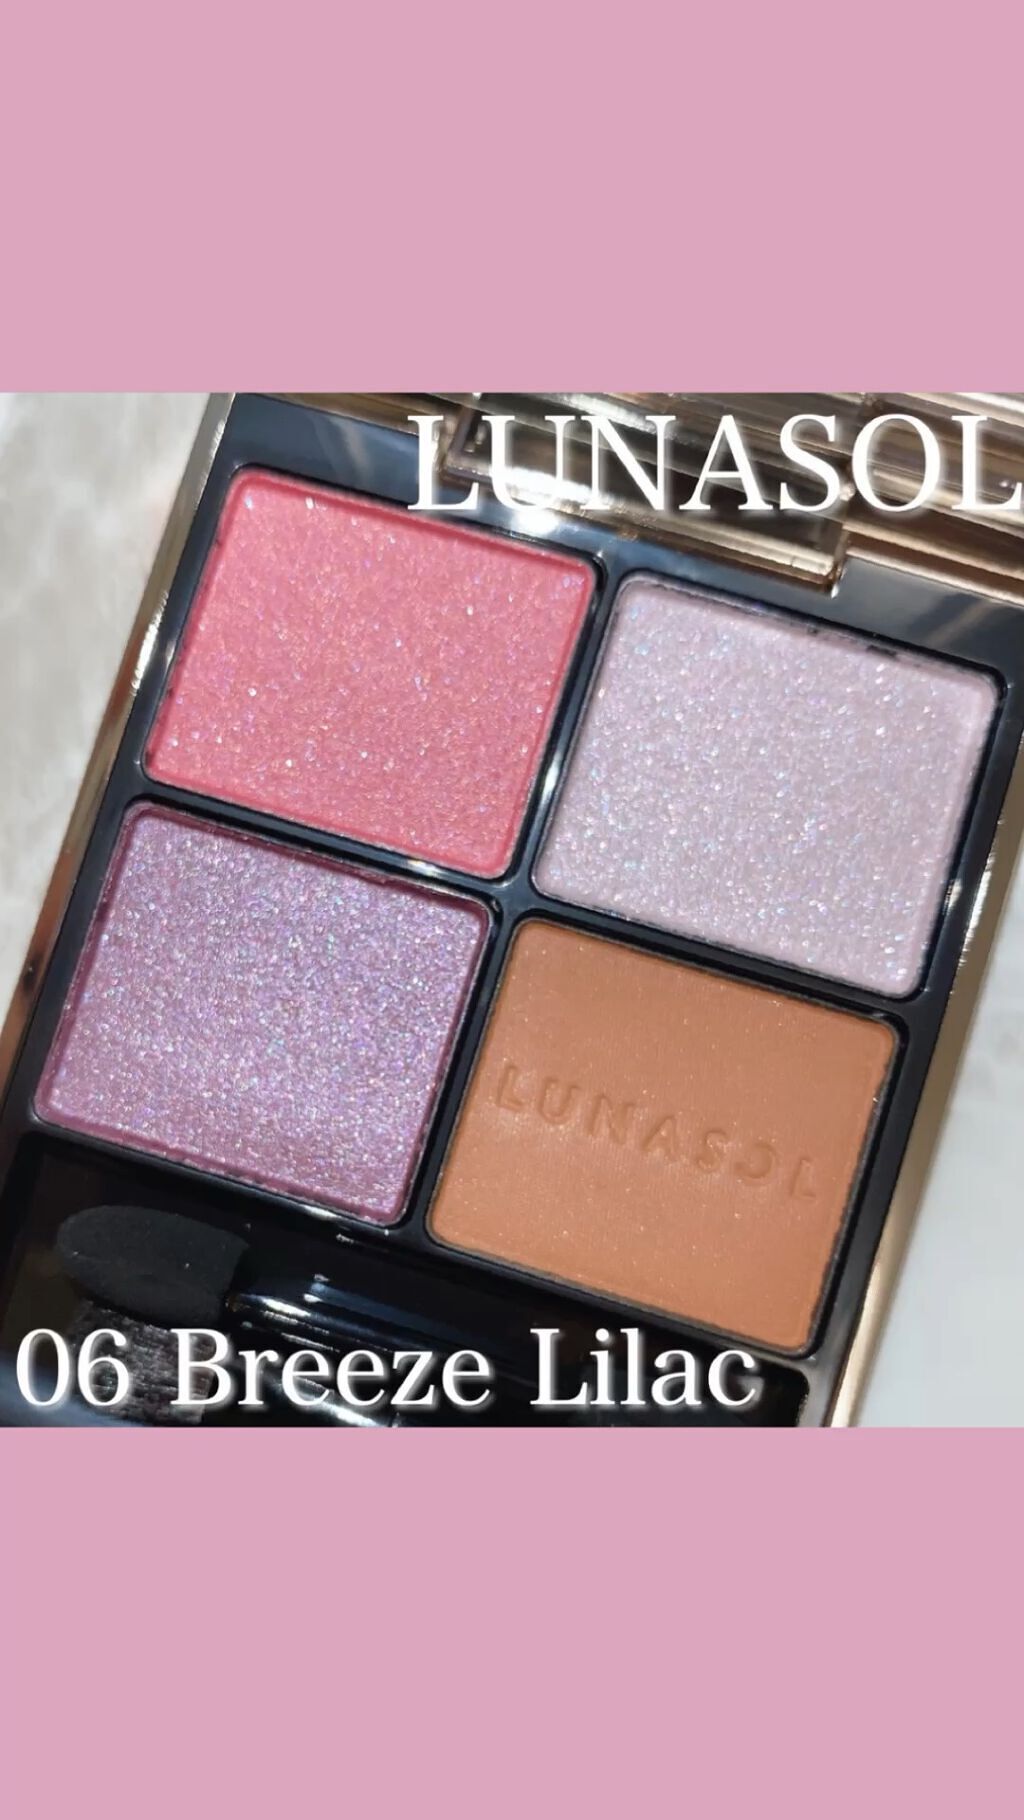 アイカラーレーション 06 Breeze Lilac / LUNASOL(ルナソル) | LIPS